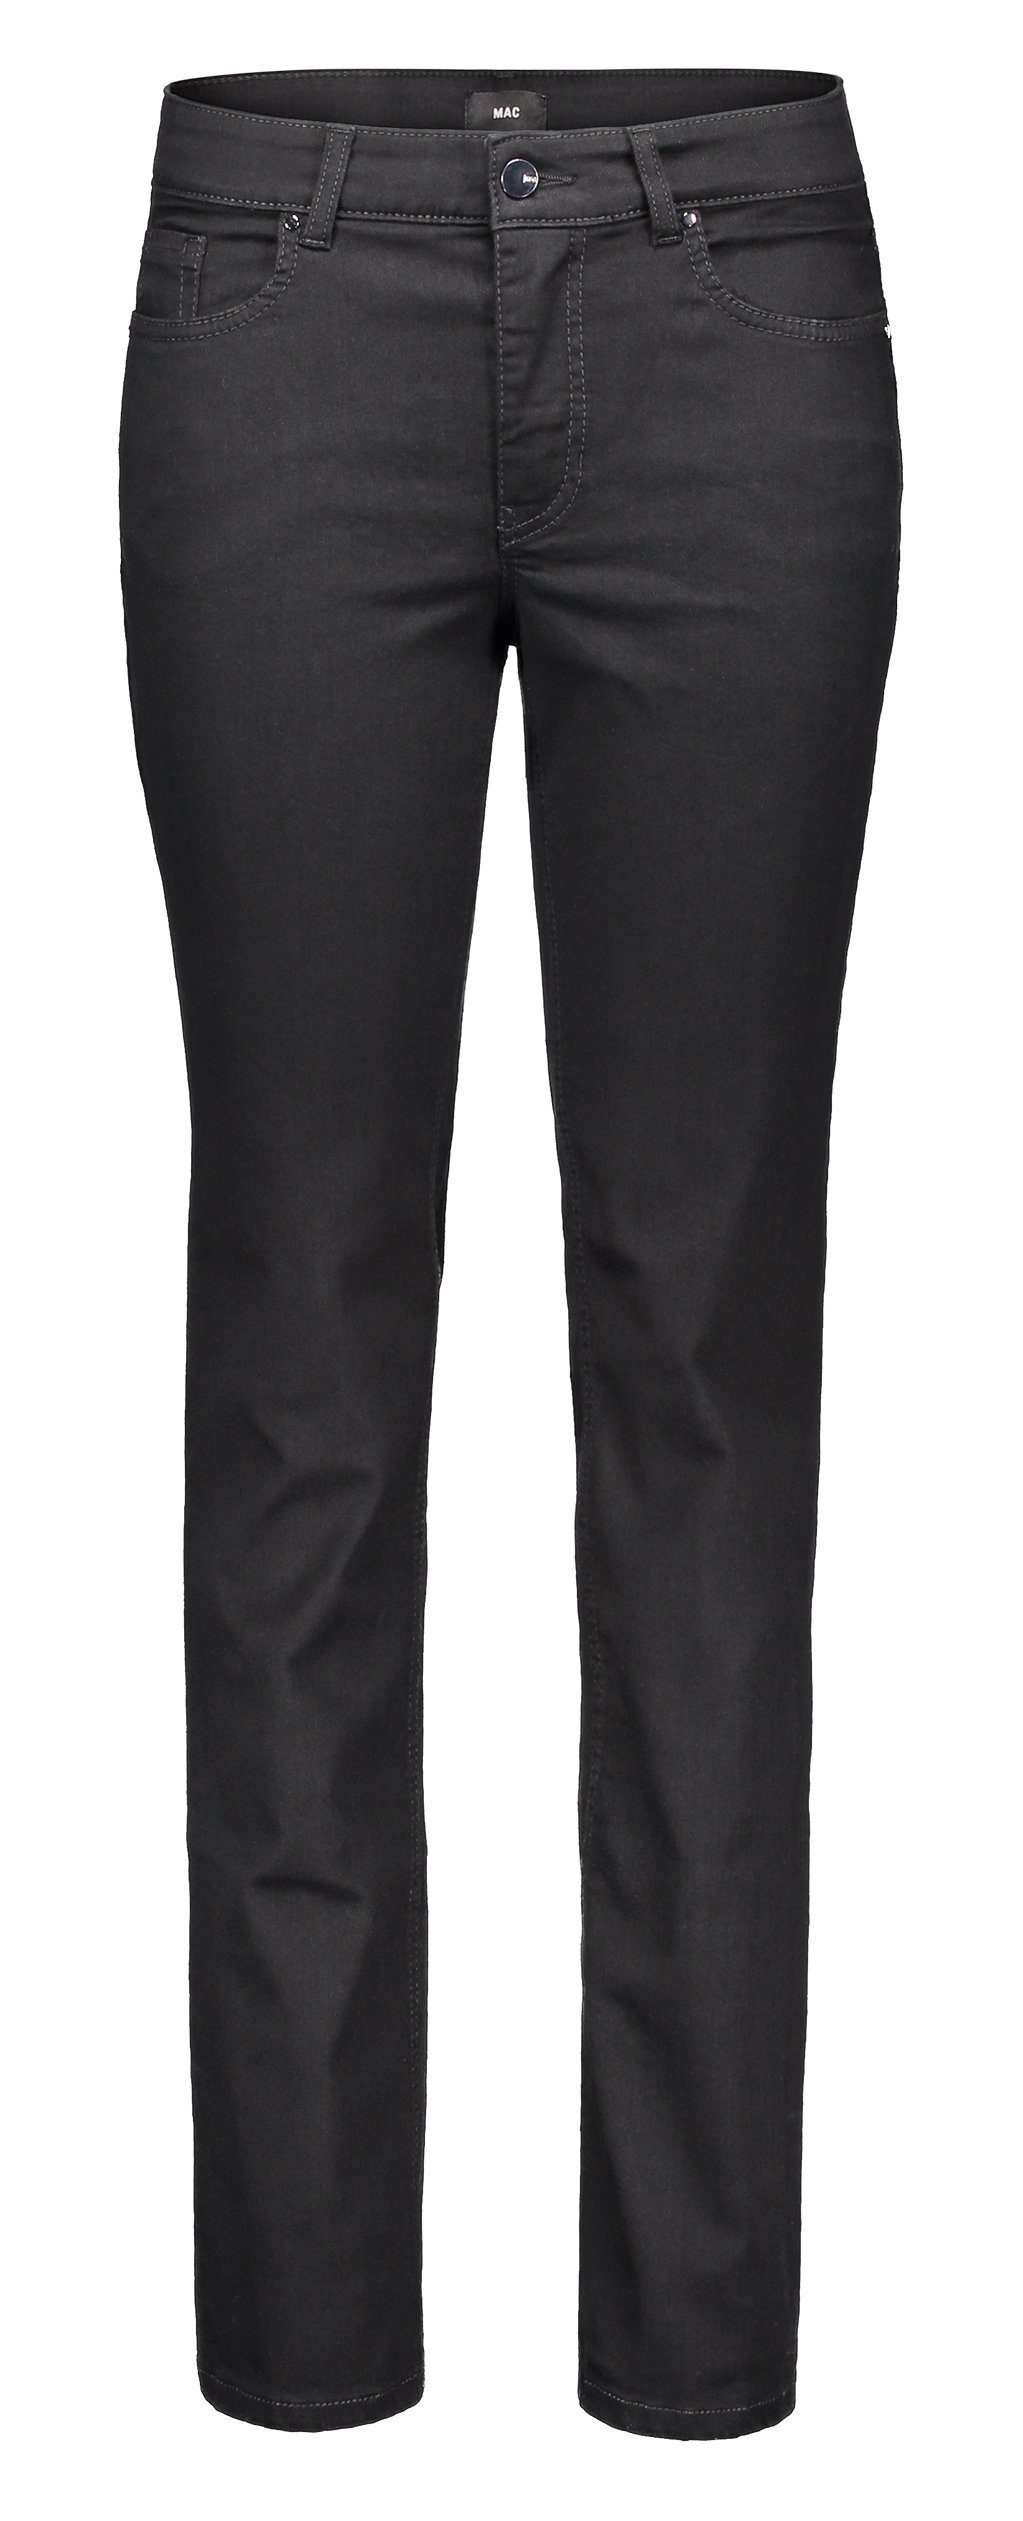 Begrenztes Erscheinungsbild MAC Stretch-Jeans MAC MELANIE black 5040-87-0380L-D999 black